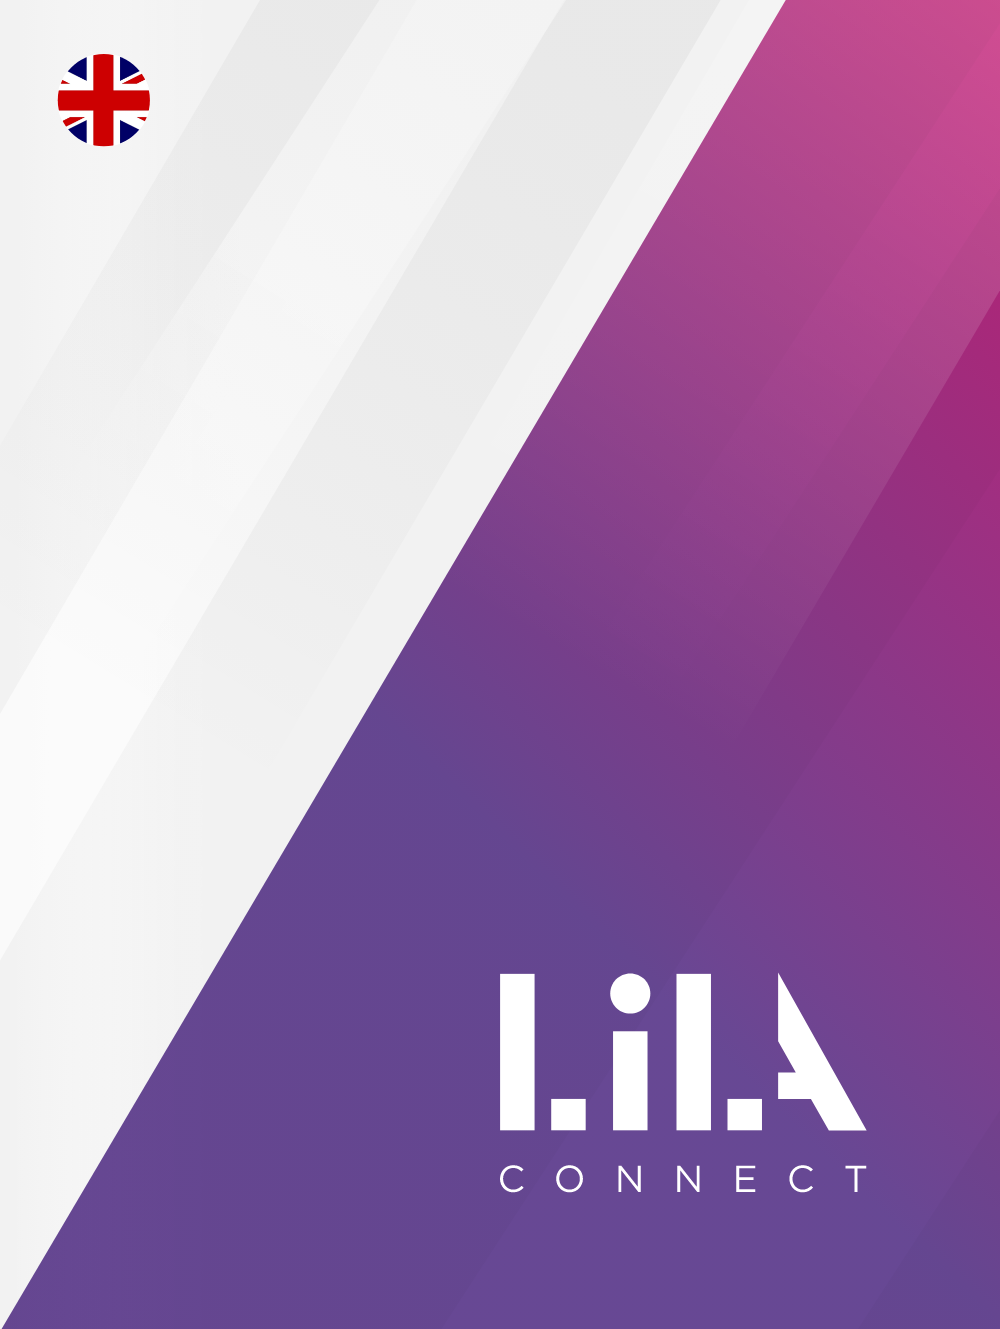 LilaConnect <em>Global Brand Design for lila fibre</em>